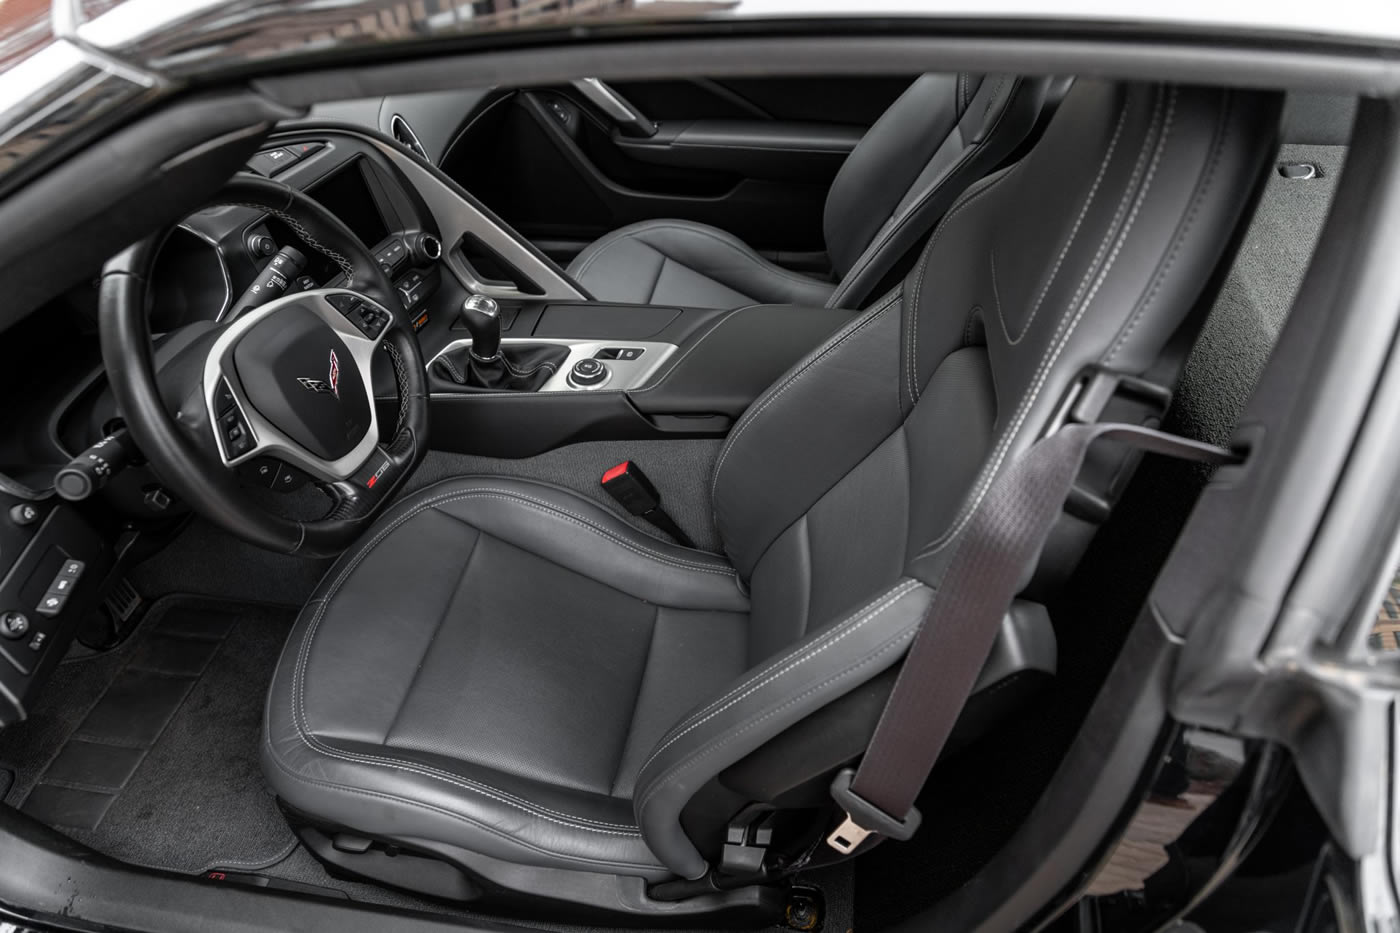 2015 Corvette Z06 Coupe in Black